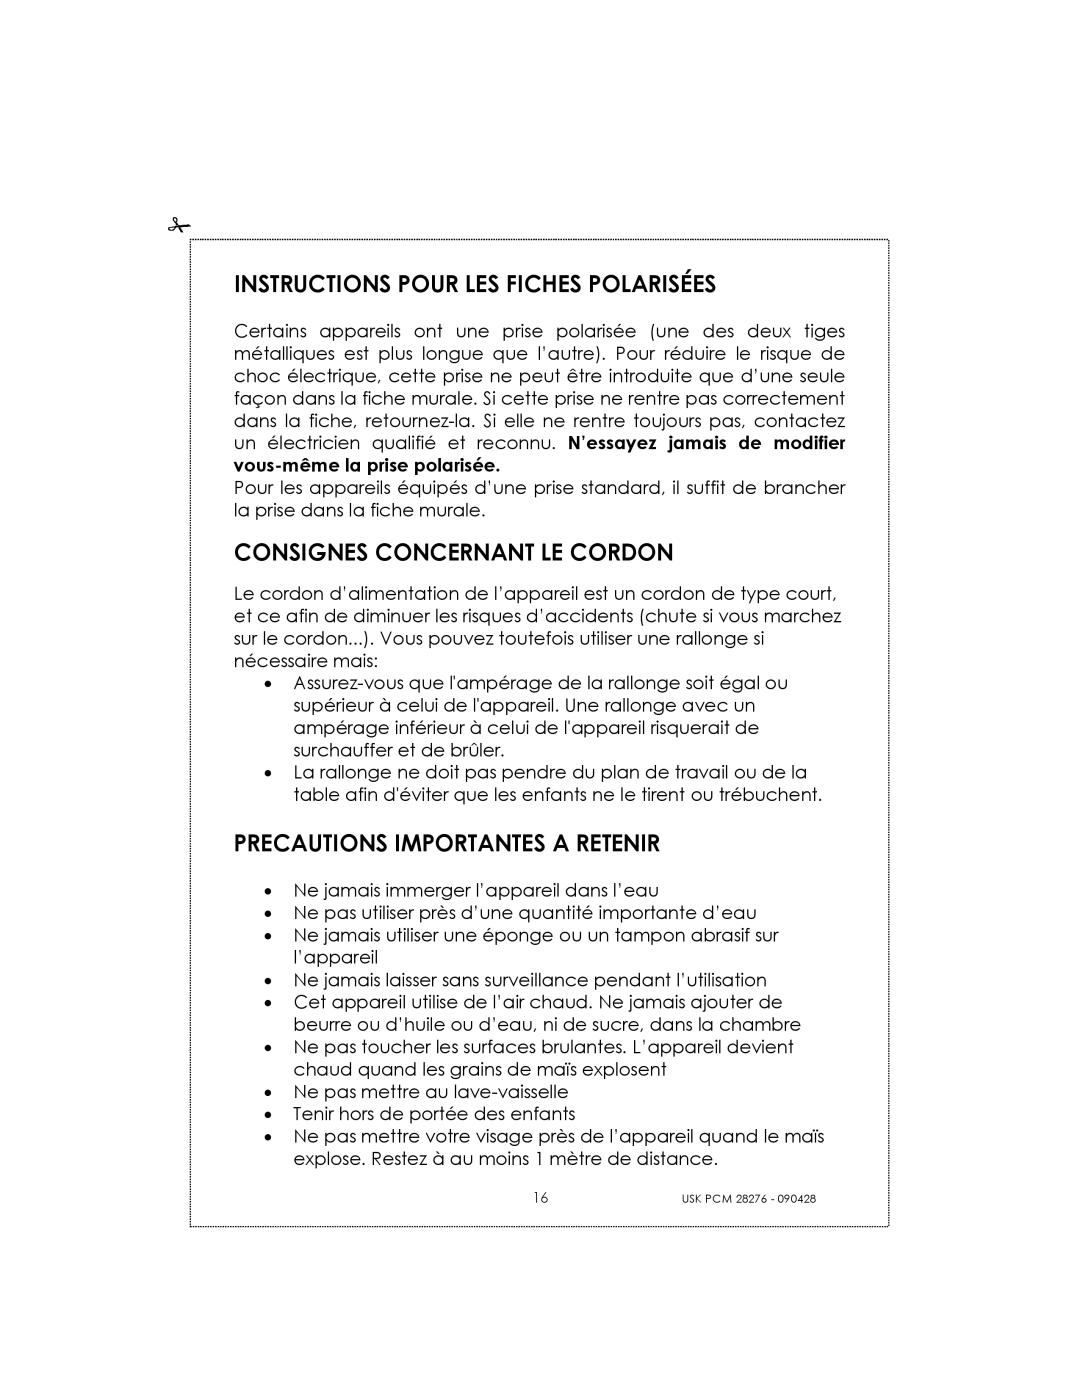 Kalorik USK PCM 28276 manual Instructions Pour Les Fiches Polarisées, Consignes Concernant Le Cordon 